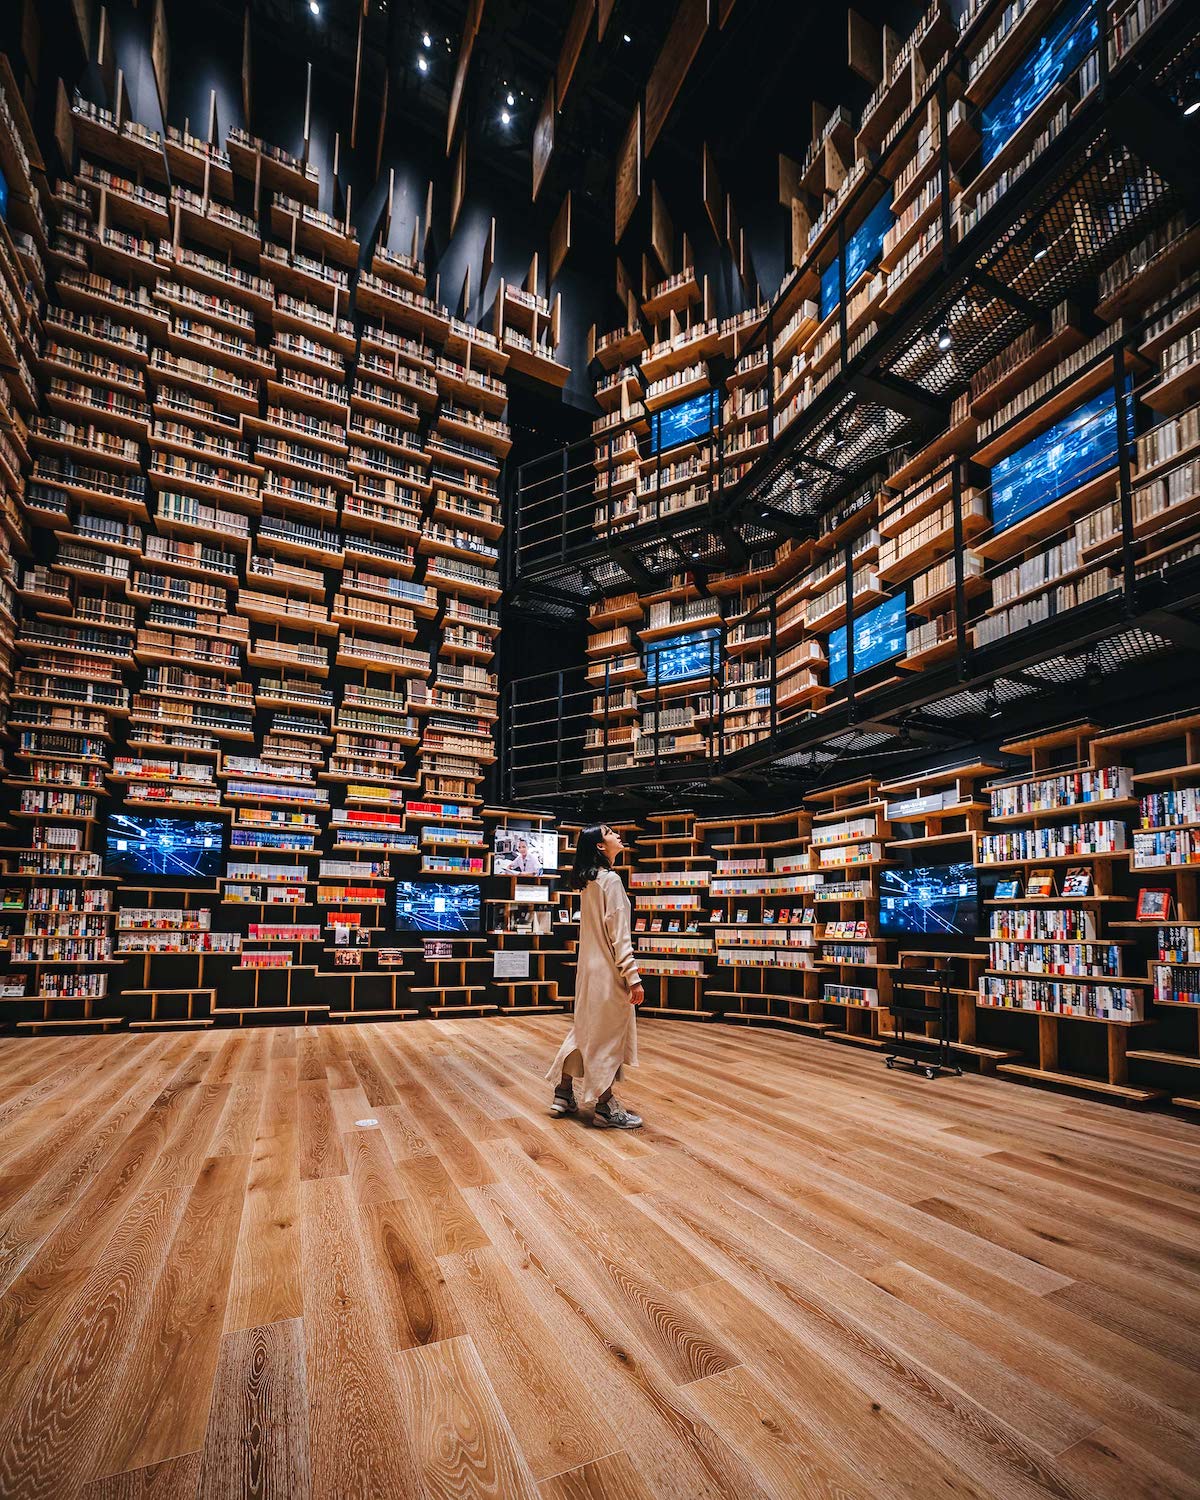 Photographer Captures the Incredible Bookshelf-Lined Interiors of Kengo Kuma’s New Kadokawa Culture Museum